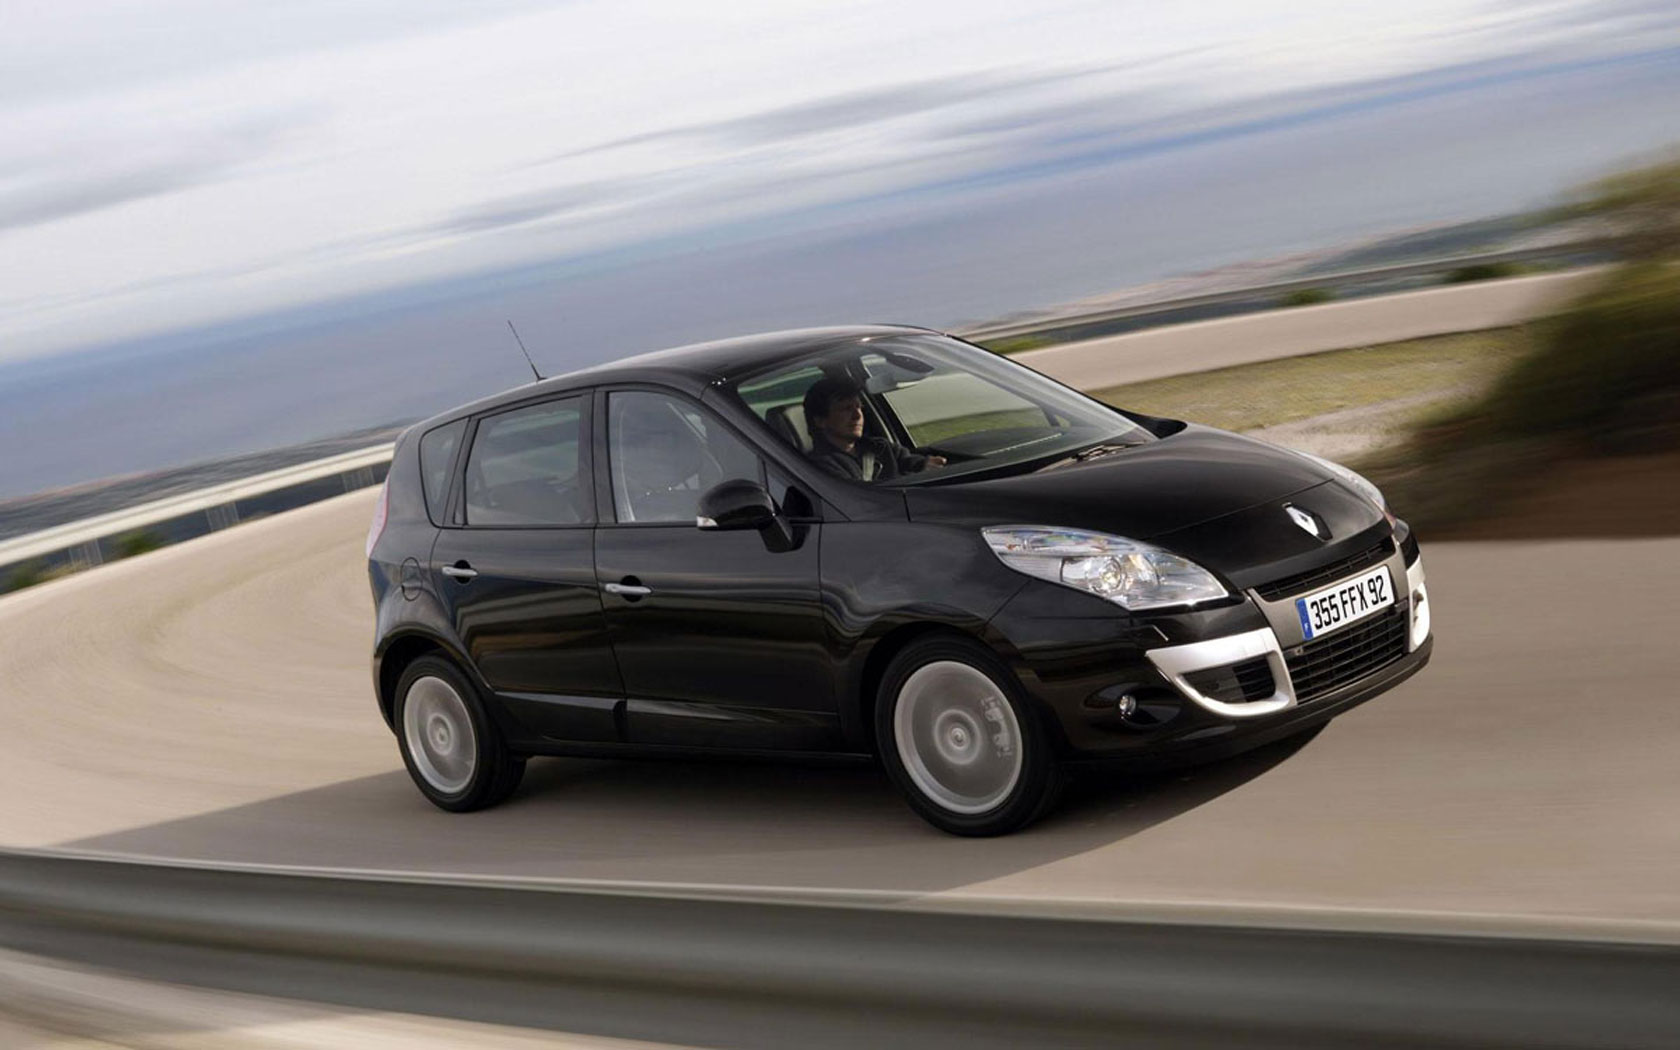  Renault Scenic (2009-2012)